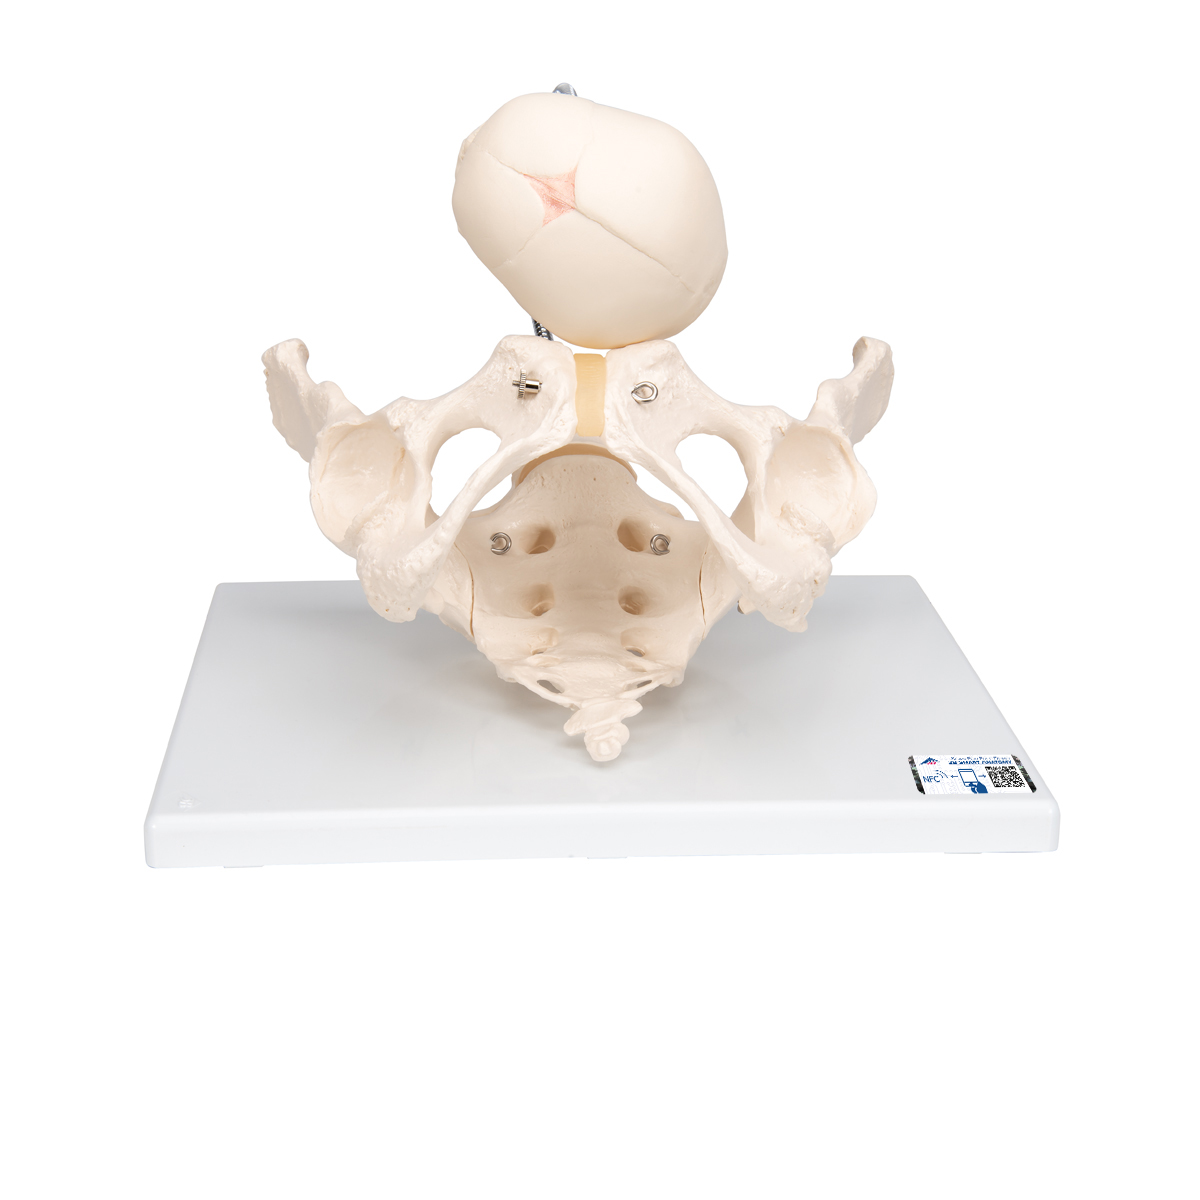 Becken Modell zur Demonstration der Geburt - 3B Smart Anatomy, Bestellnummer 1000334, L30, 3B Scientific